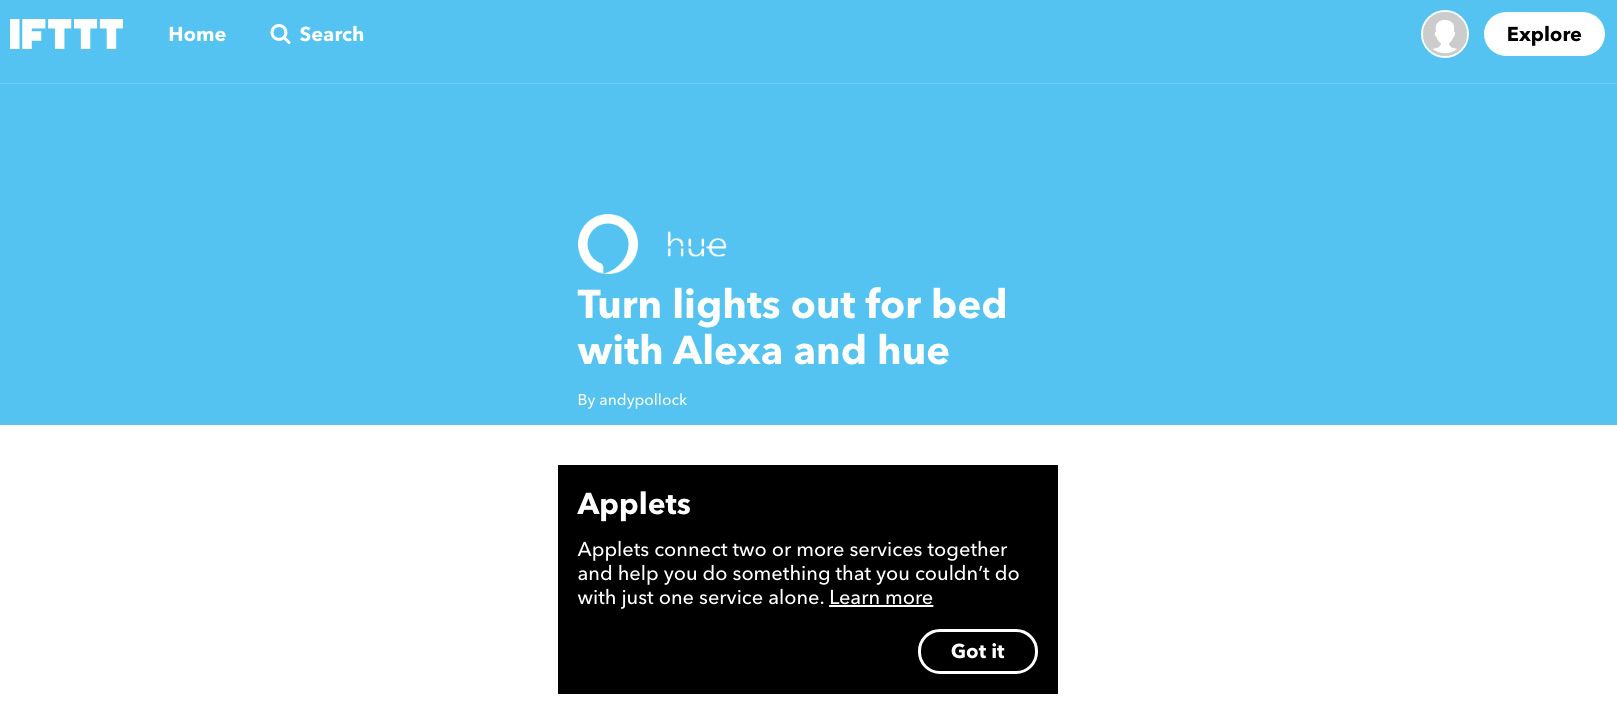 Captura de tela do miniaplicativo IFTTT dizendo a Alexa para apagar as luzes da cama